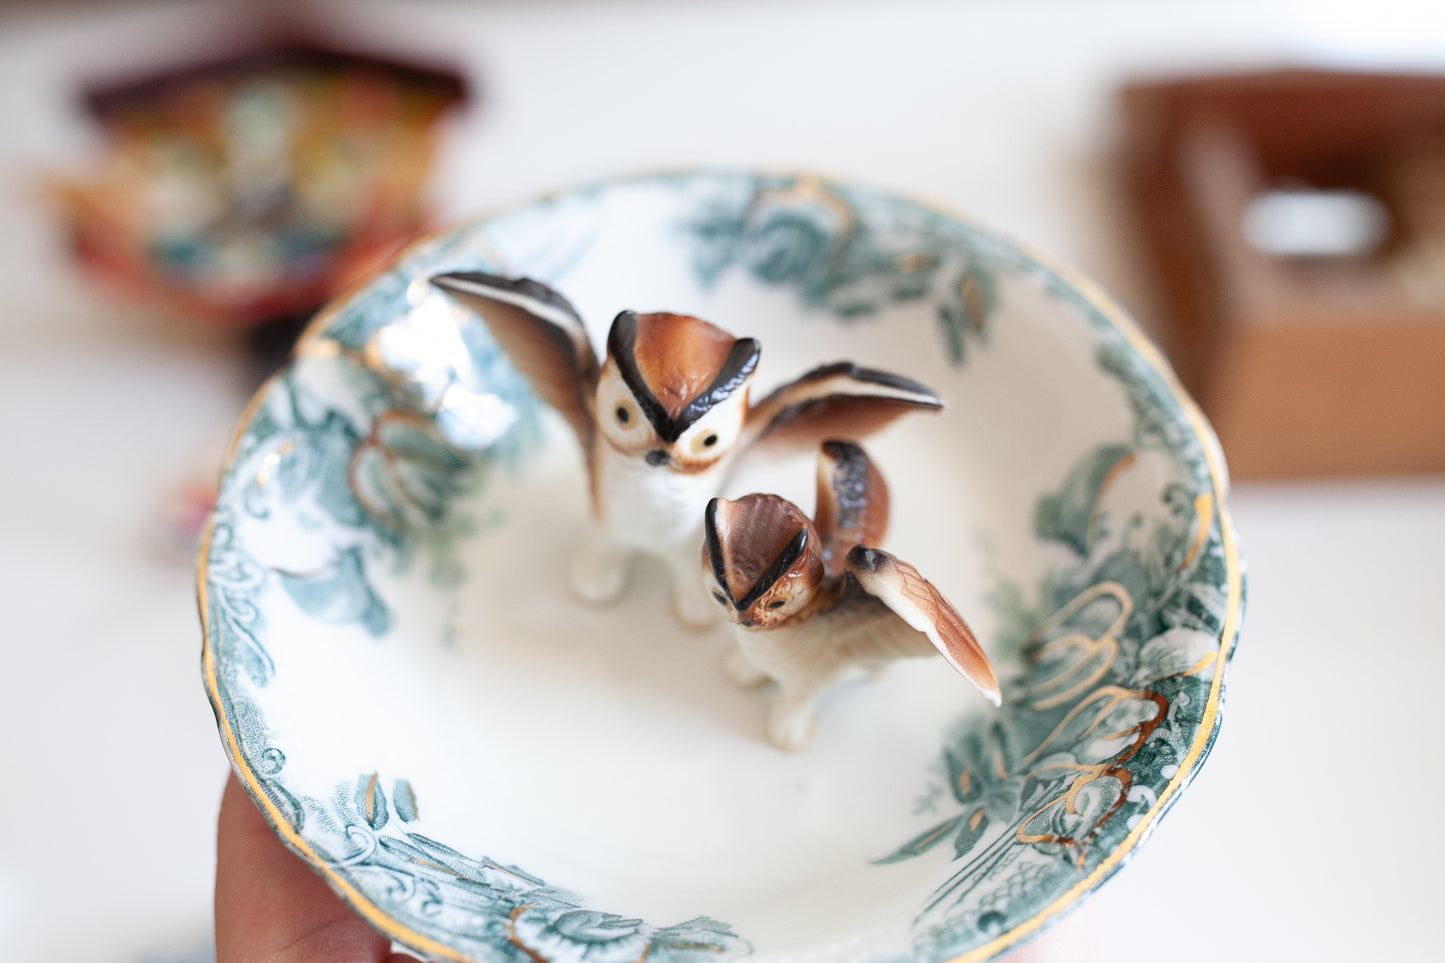 Vintage Owls - Porcelain Owls